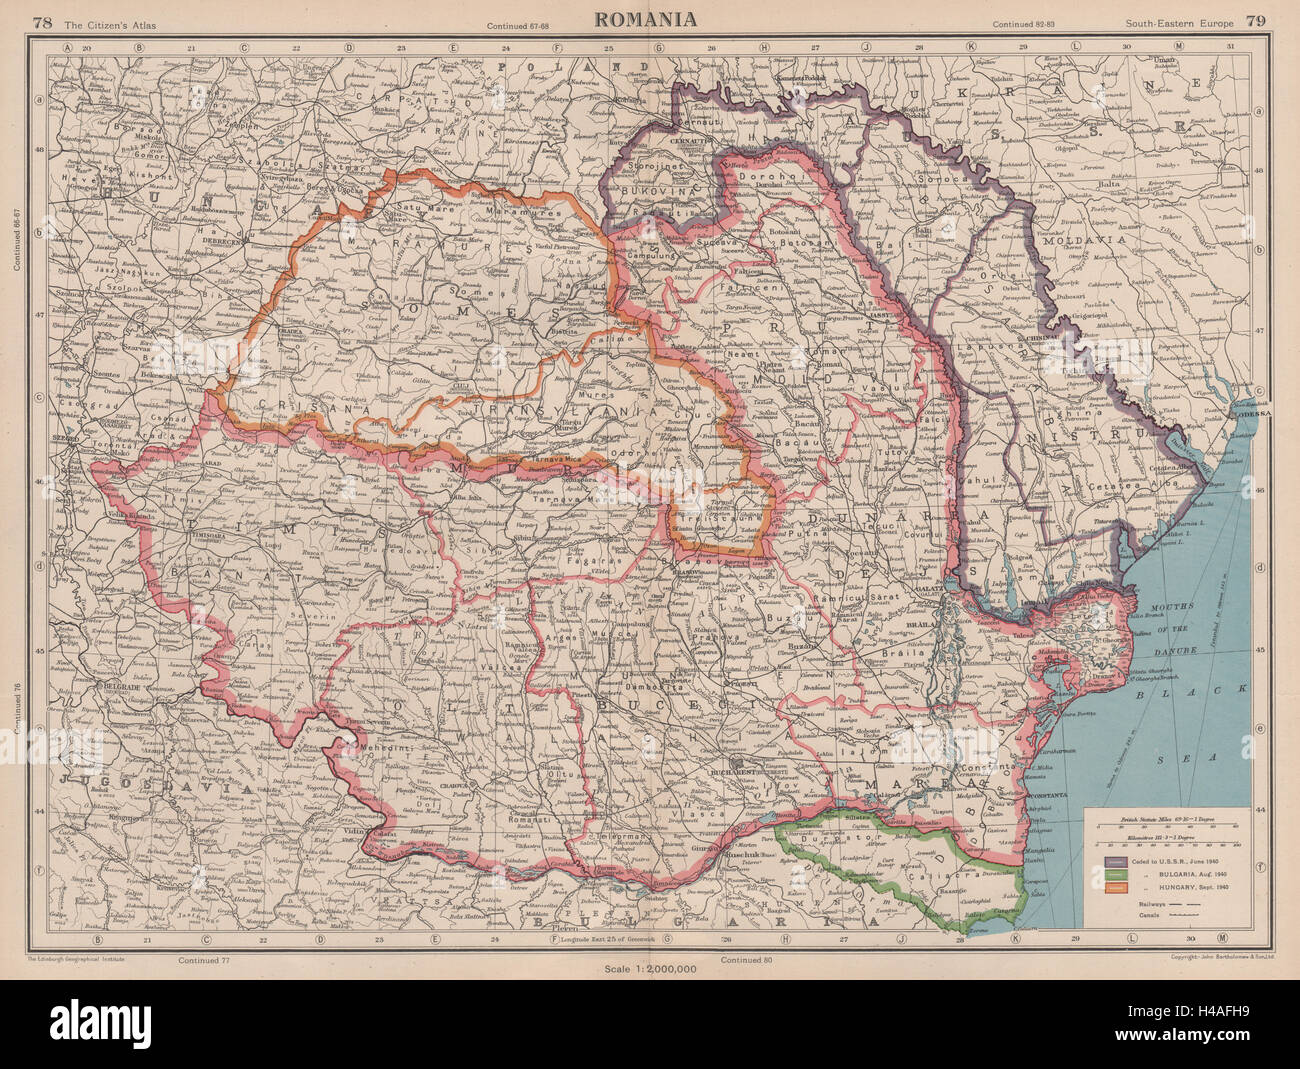 1940 год румыния. Территория Румыния с 1918 до 1940. Территория Румынии до 1940 года. Румыния 1918 год карта. Карта Румынии до 1940.